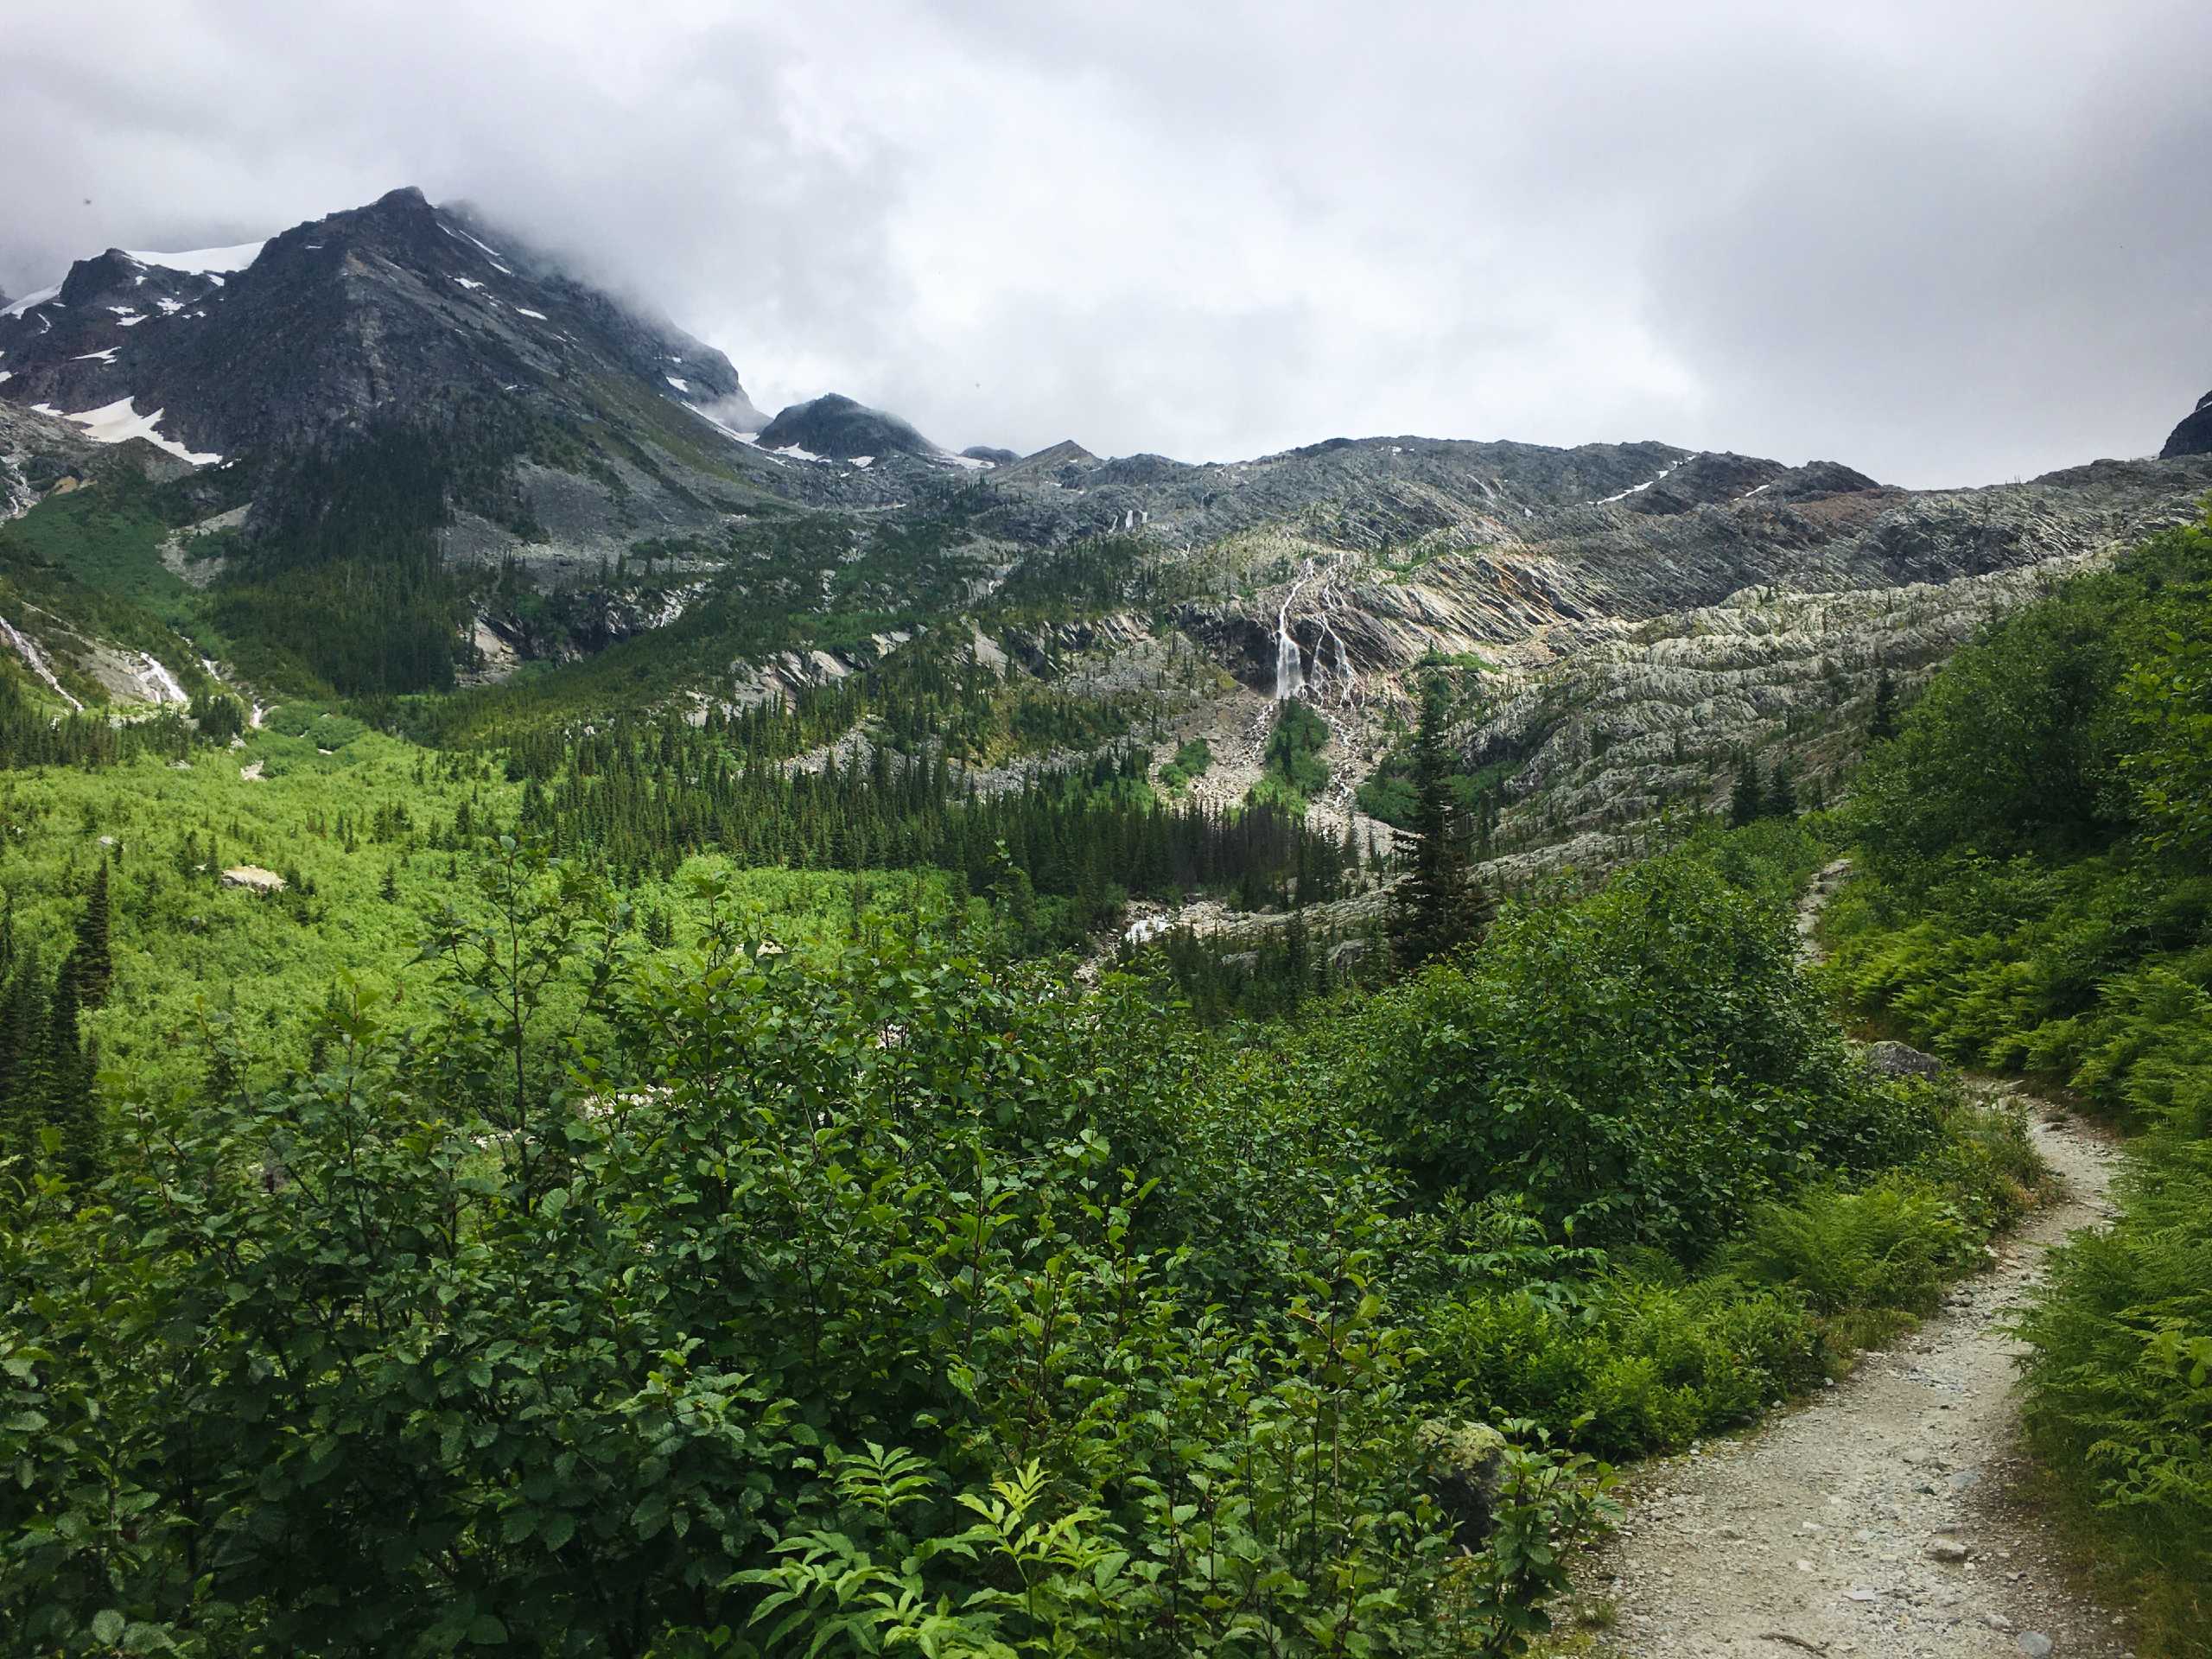 Great Glacier Trail